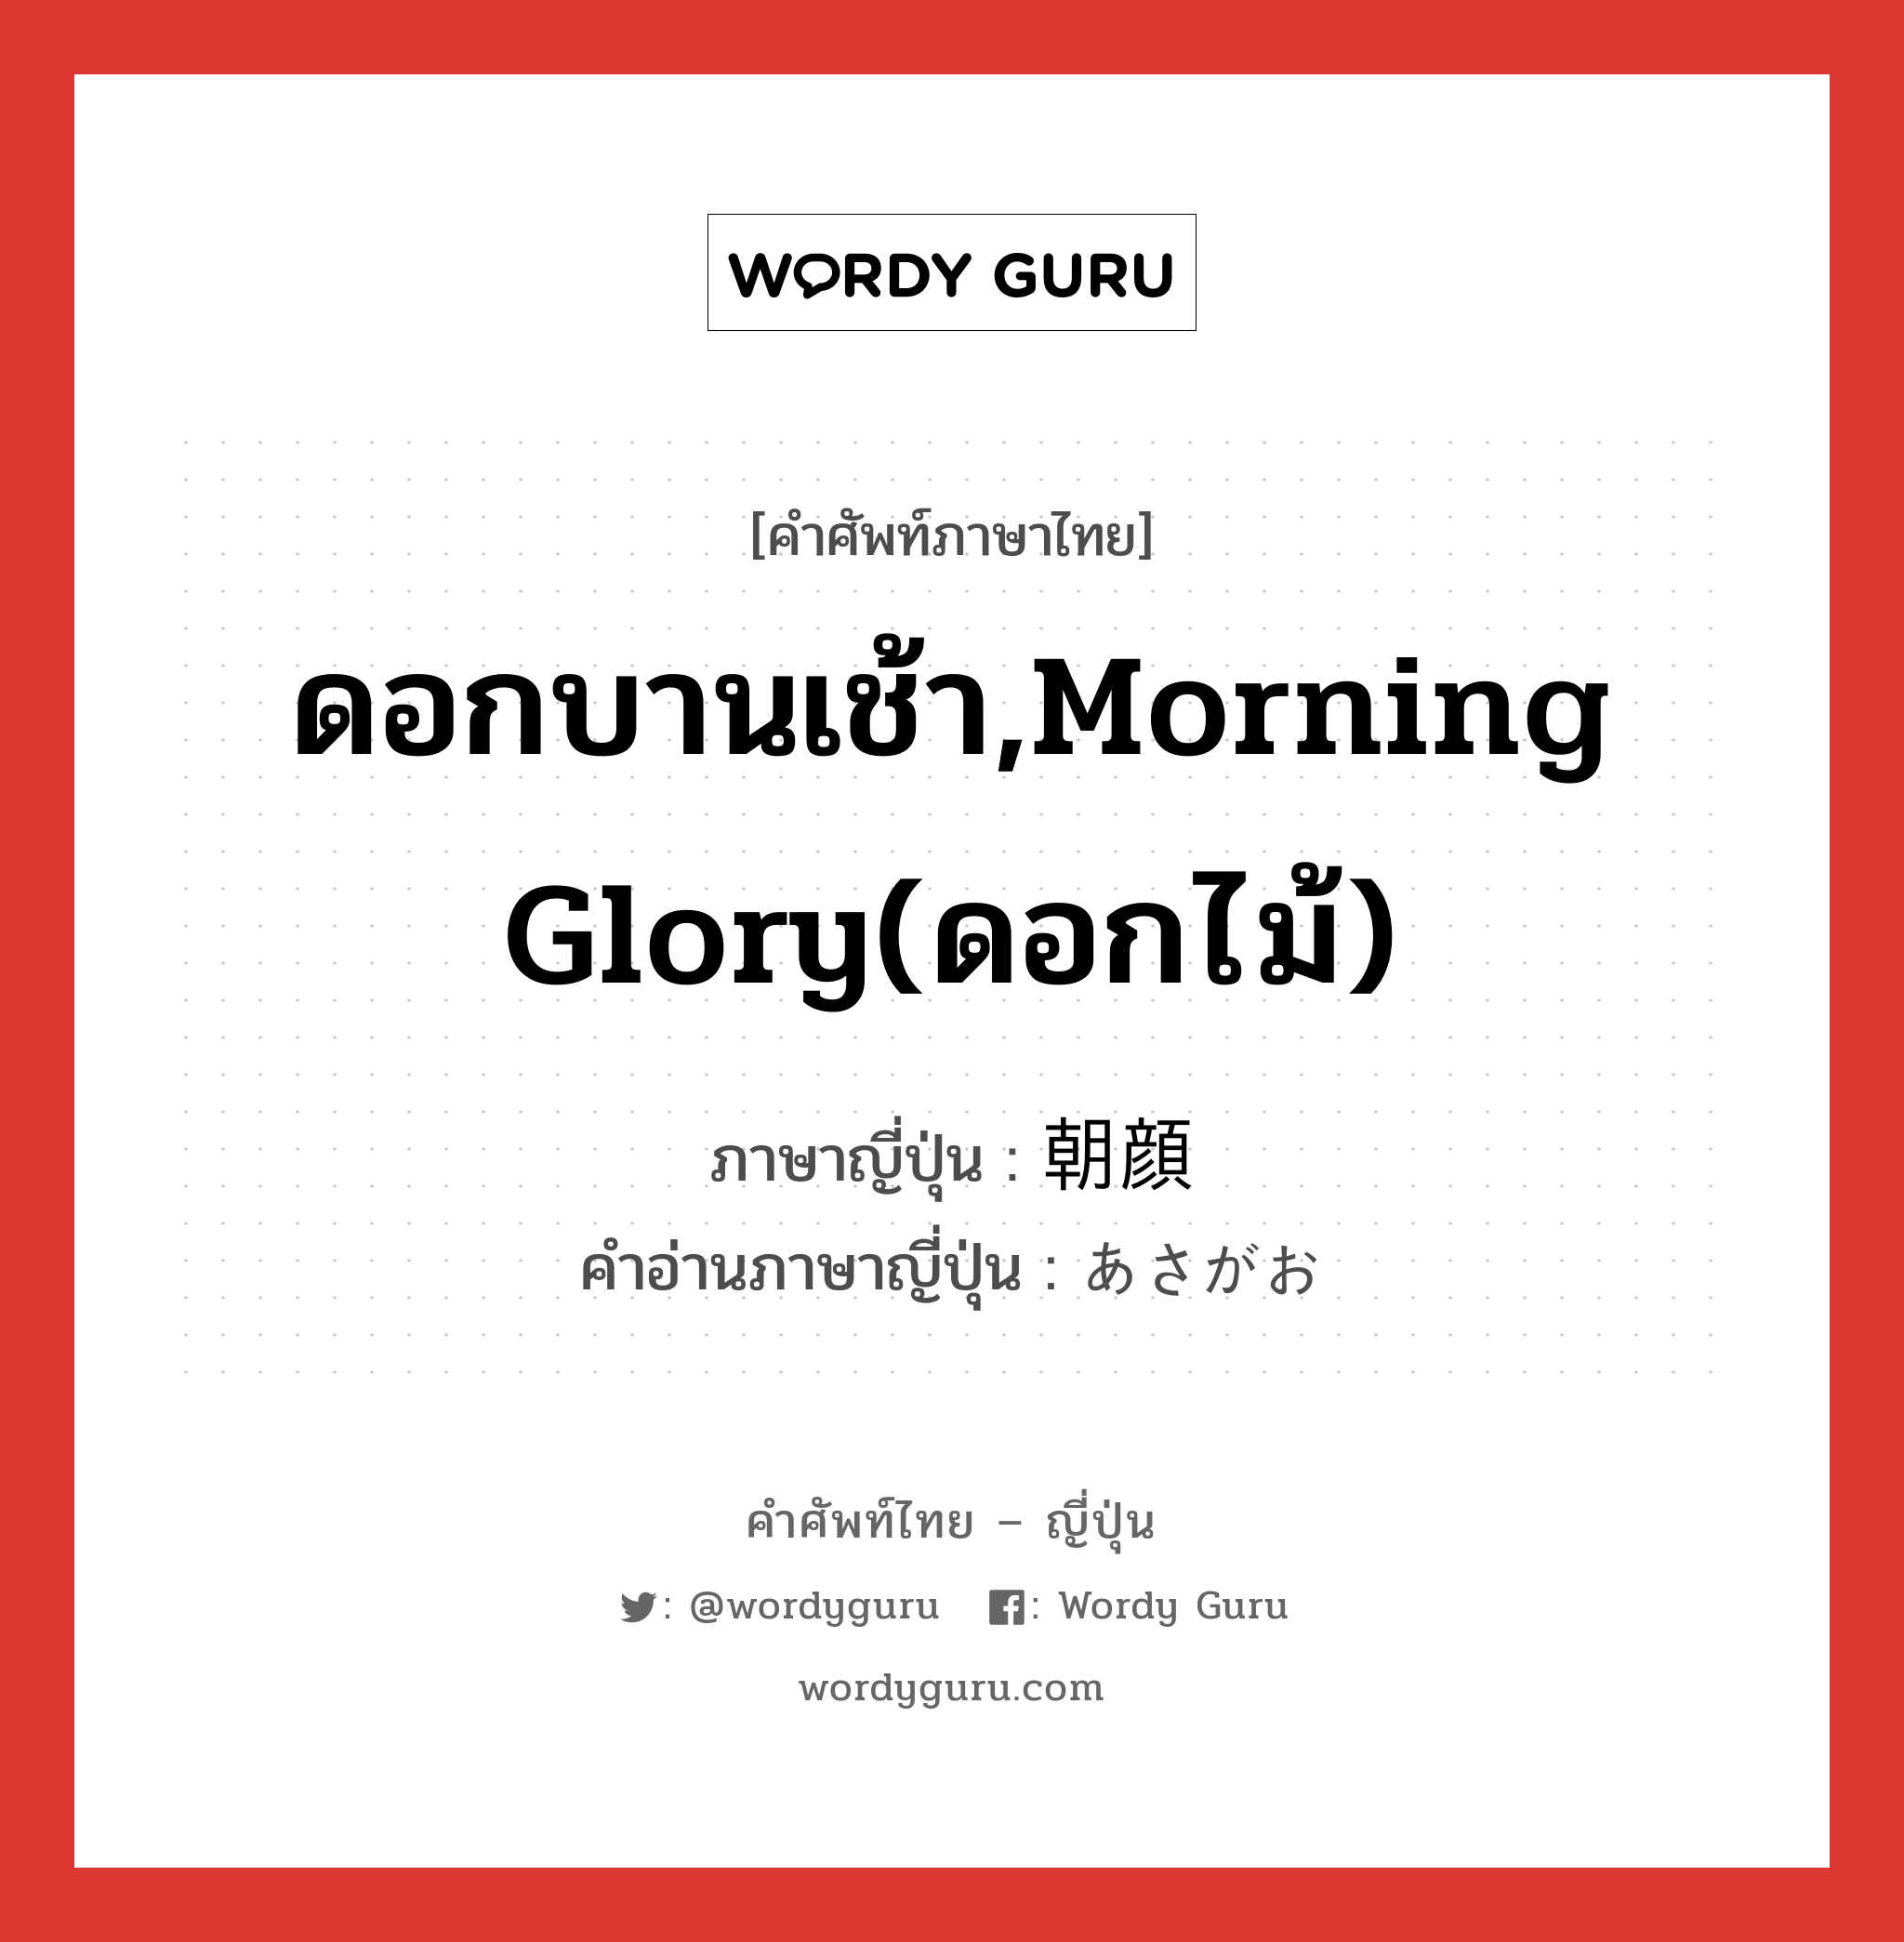 ดอกบานเช้า,morning glory(ดอกไม้) ภาษาญี่ปุ่นคืออะไร, คำศัพท์ภาษาไทย - ญี่ปุ่น ดอกบานเช้า,morning glory(ดอกไม้) ภาษาญี่ปุ่น 朝顔 คำอ่านภาษาญี่ปุ่น あさがお หมวด n หมวด n